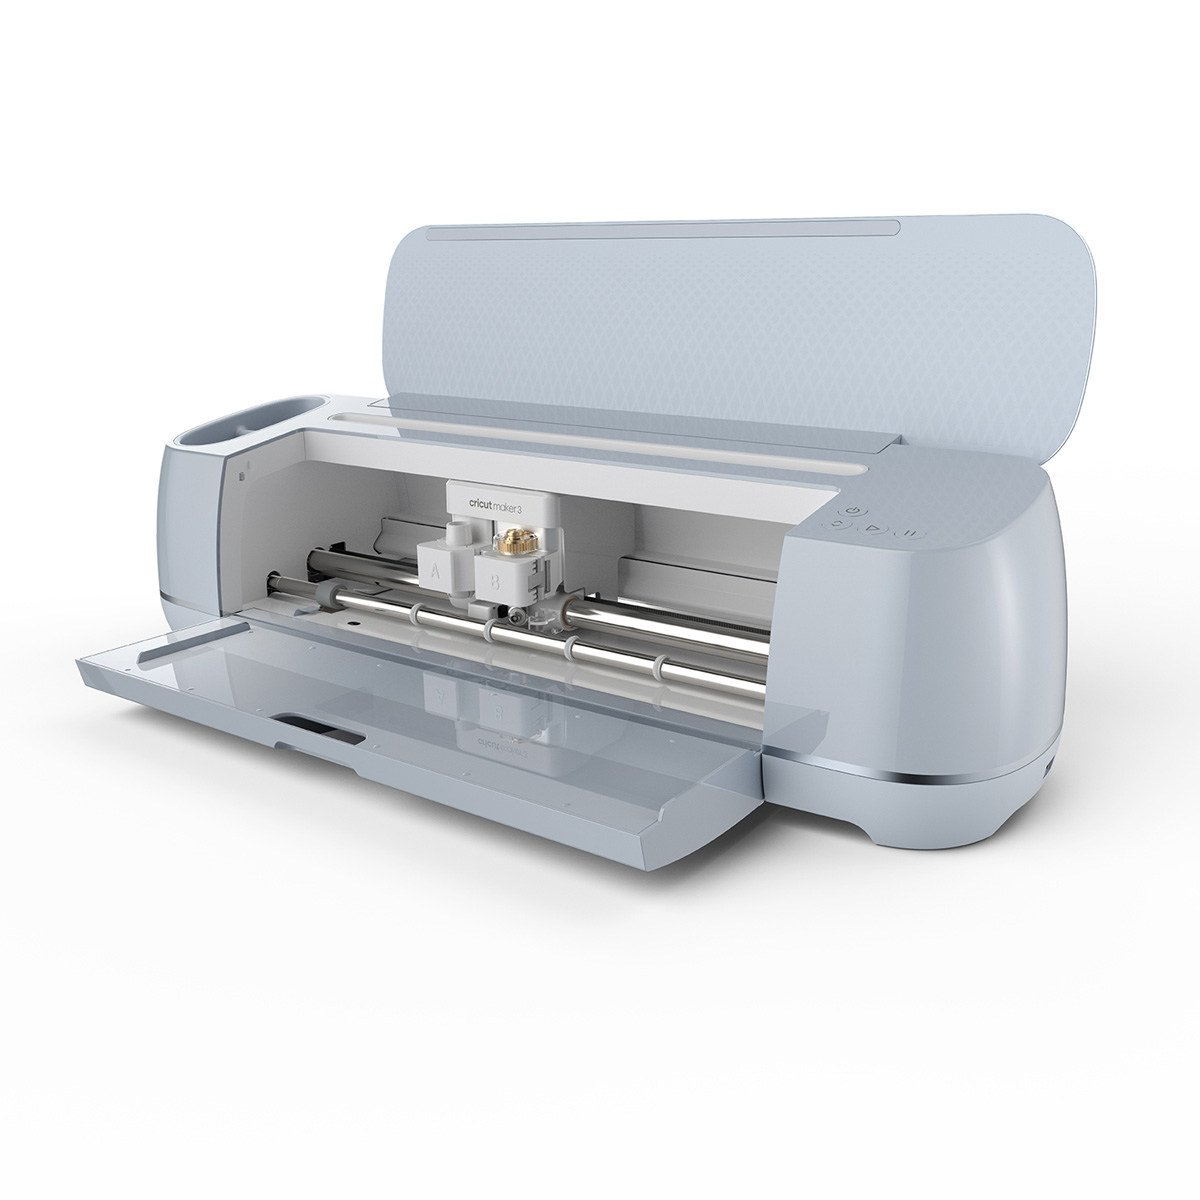  Cricut Explore 3 Smart Cutting Machine